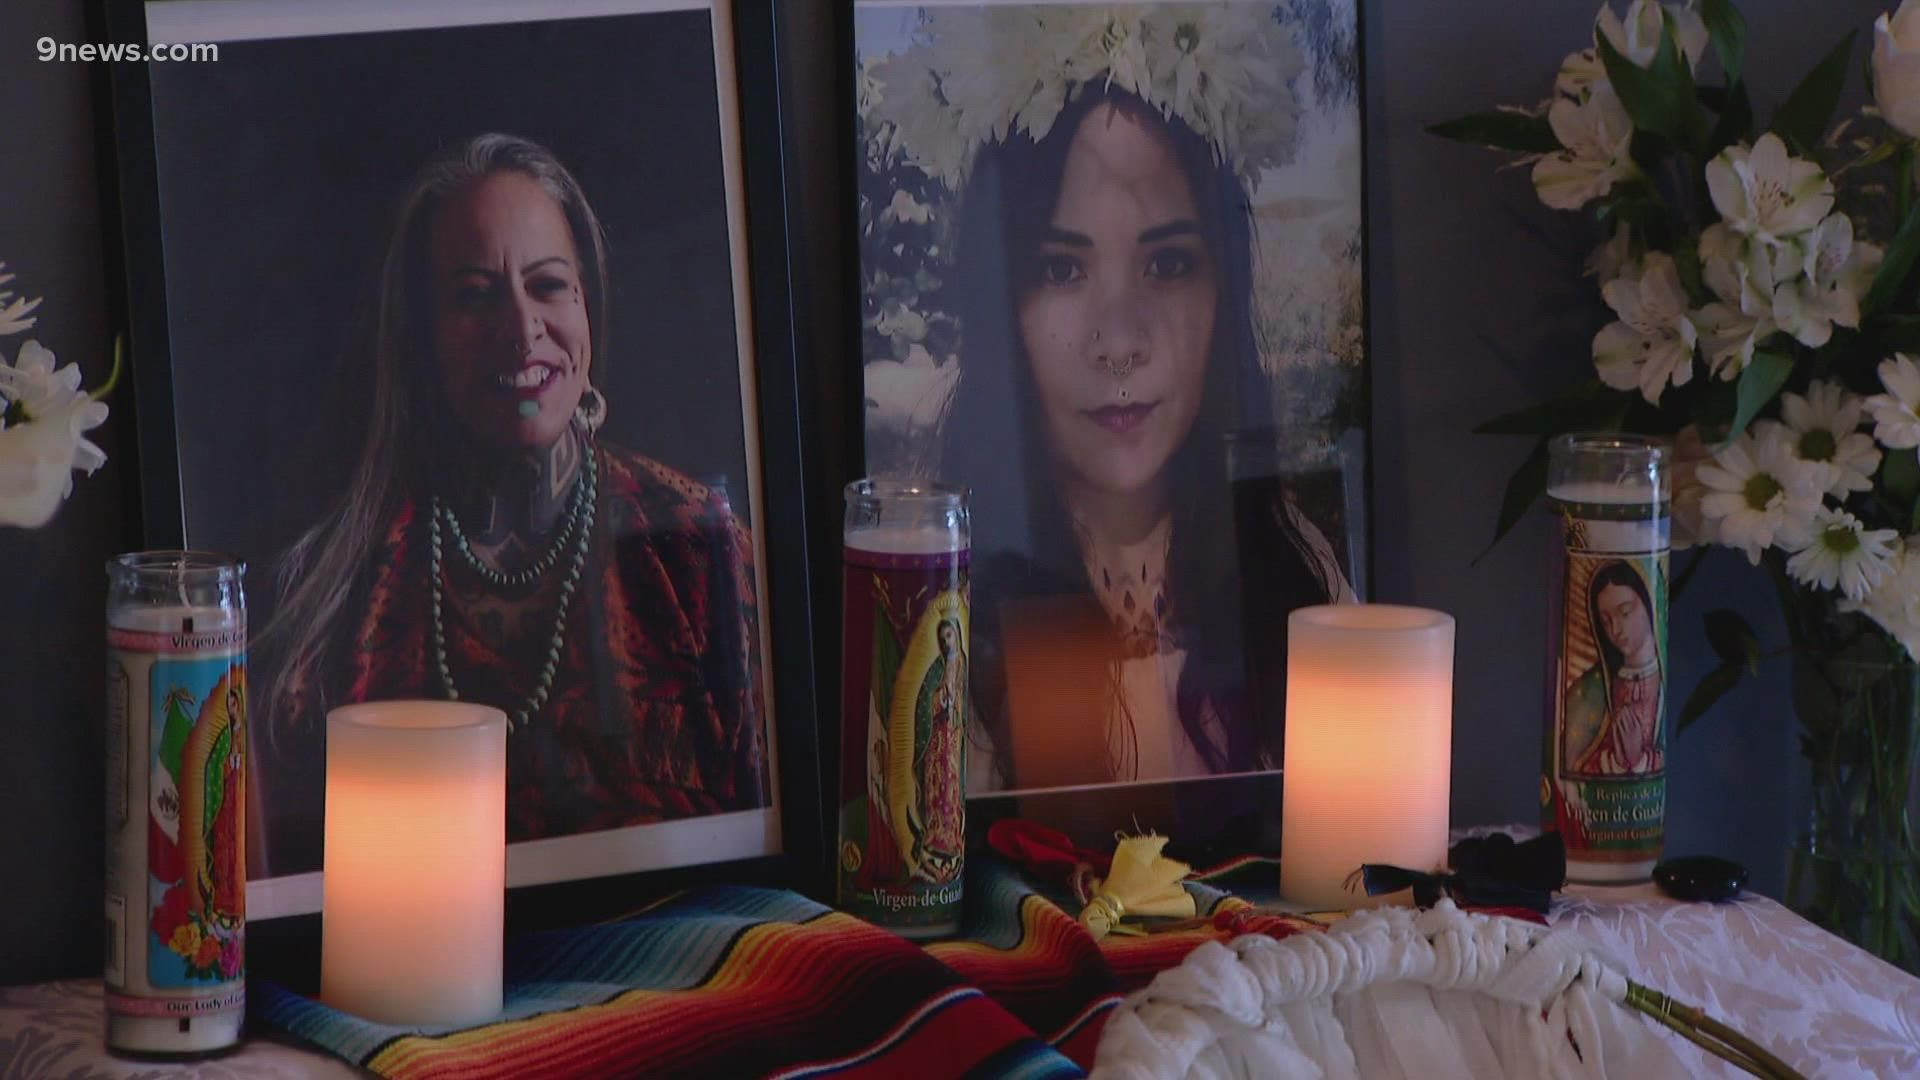 Museo de las Americas, on Santa in Denver, now has an altar on display to honor Alicia Cardenas and Alyssa Gunn-Maldonado, who were killed in a shooting spree.